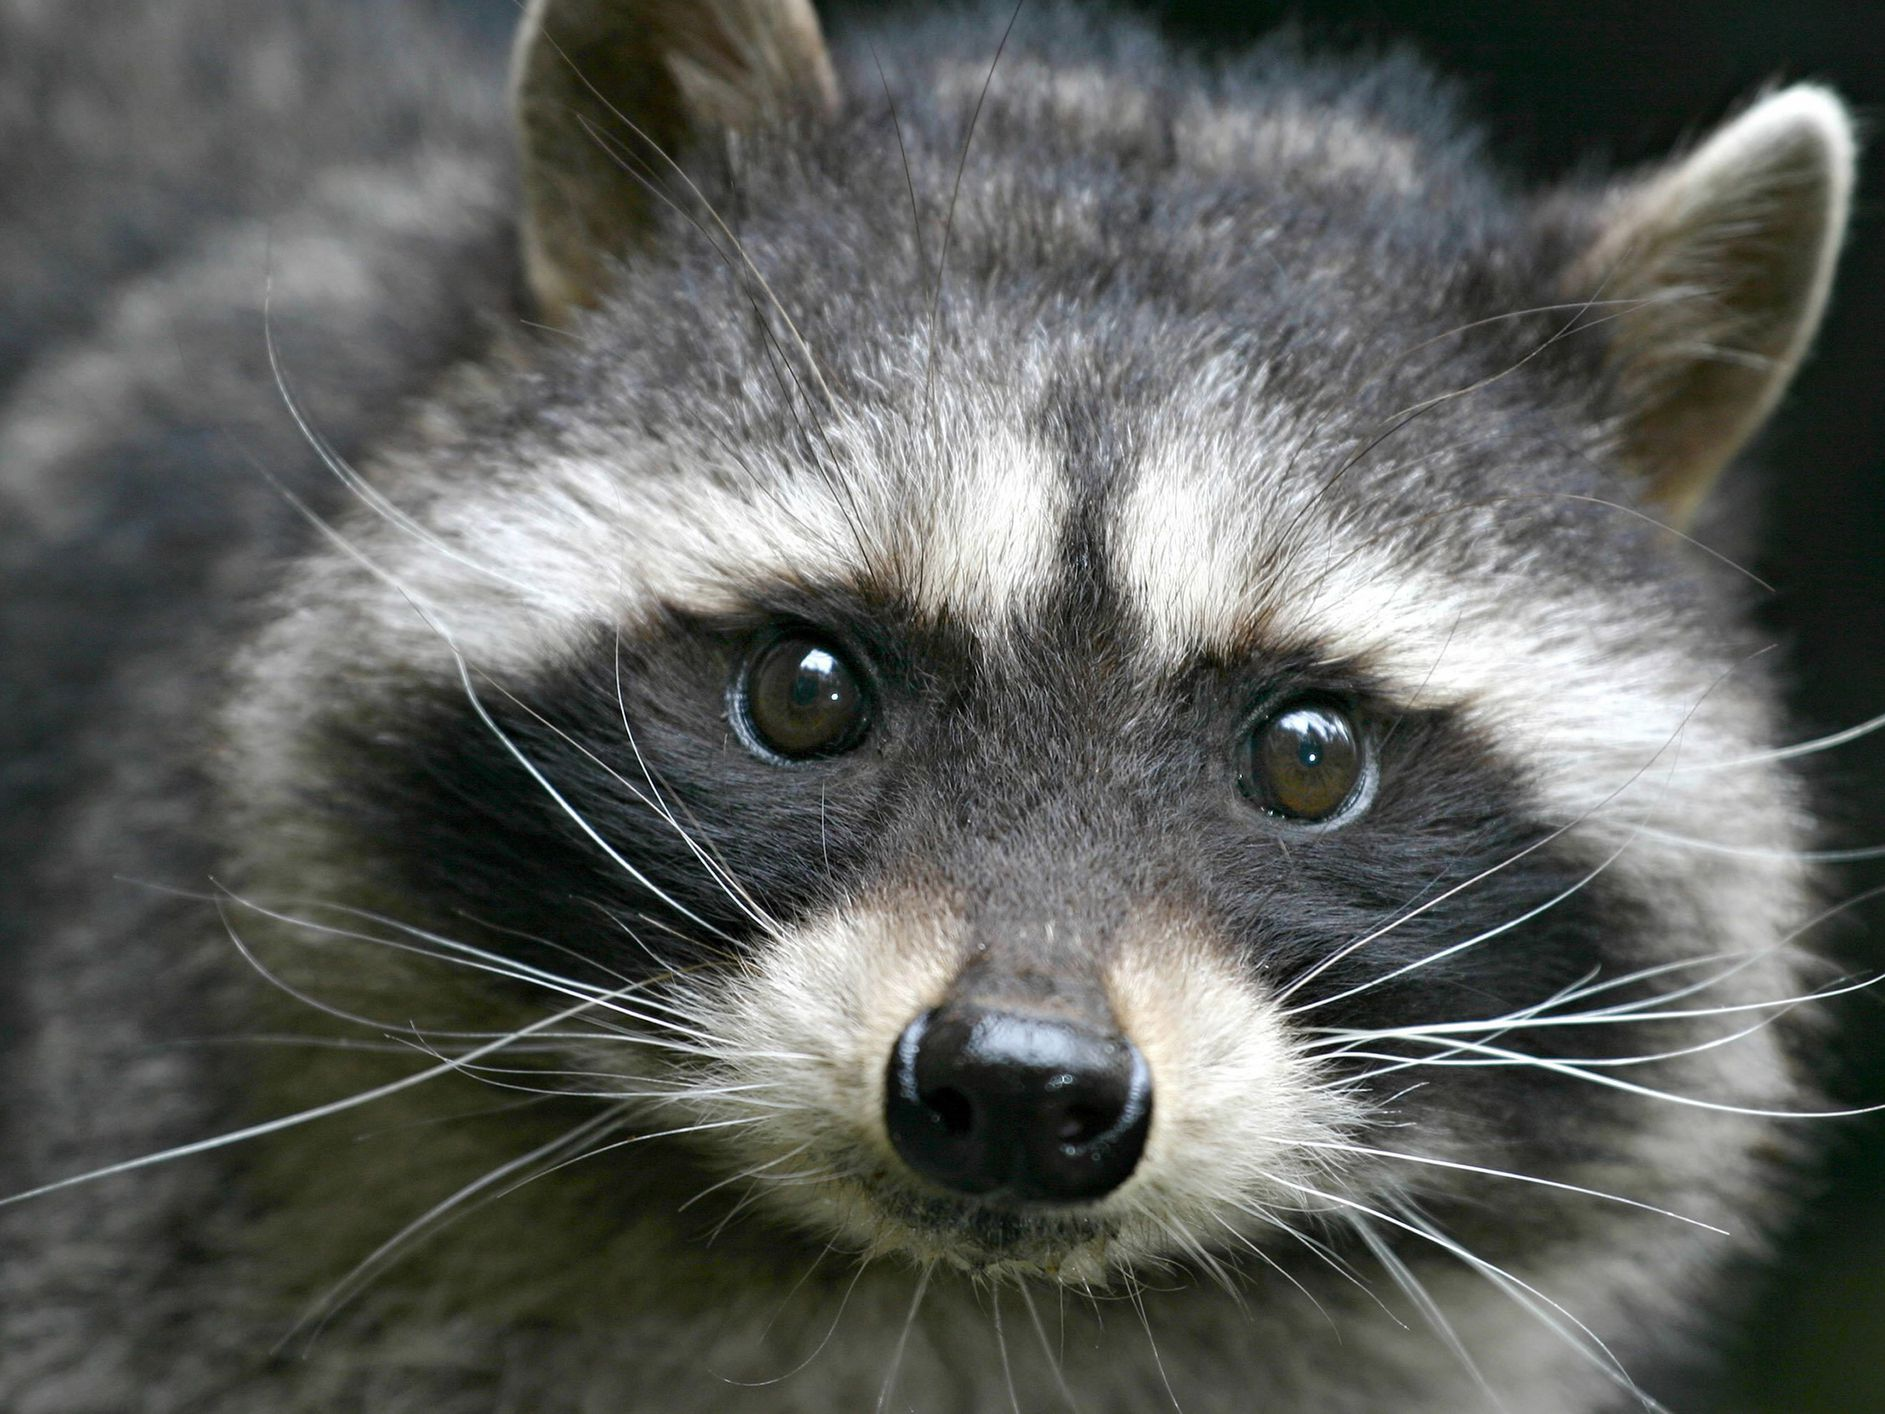 A cute raccoon.